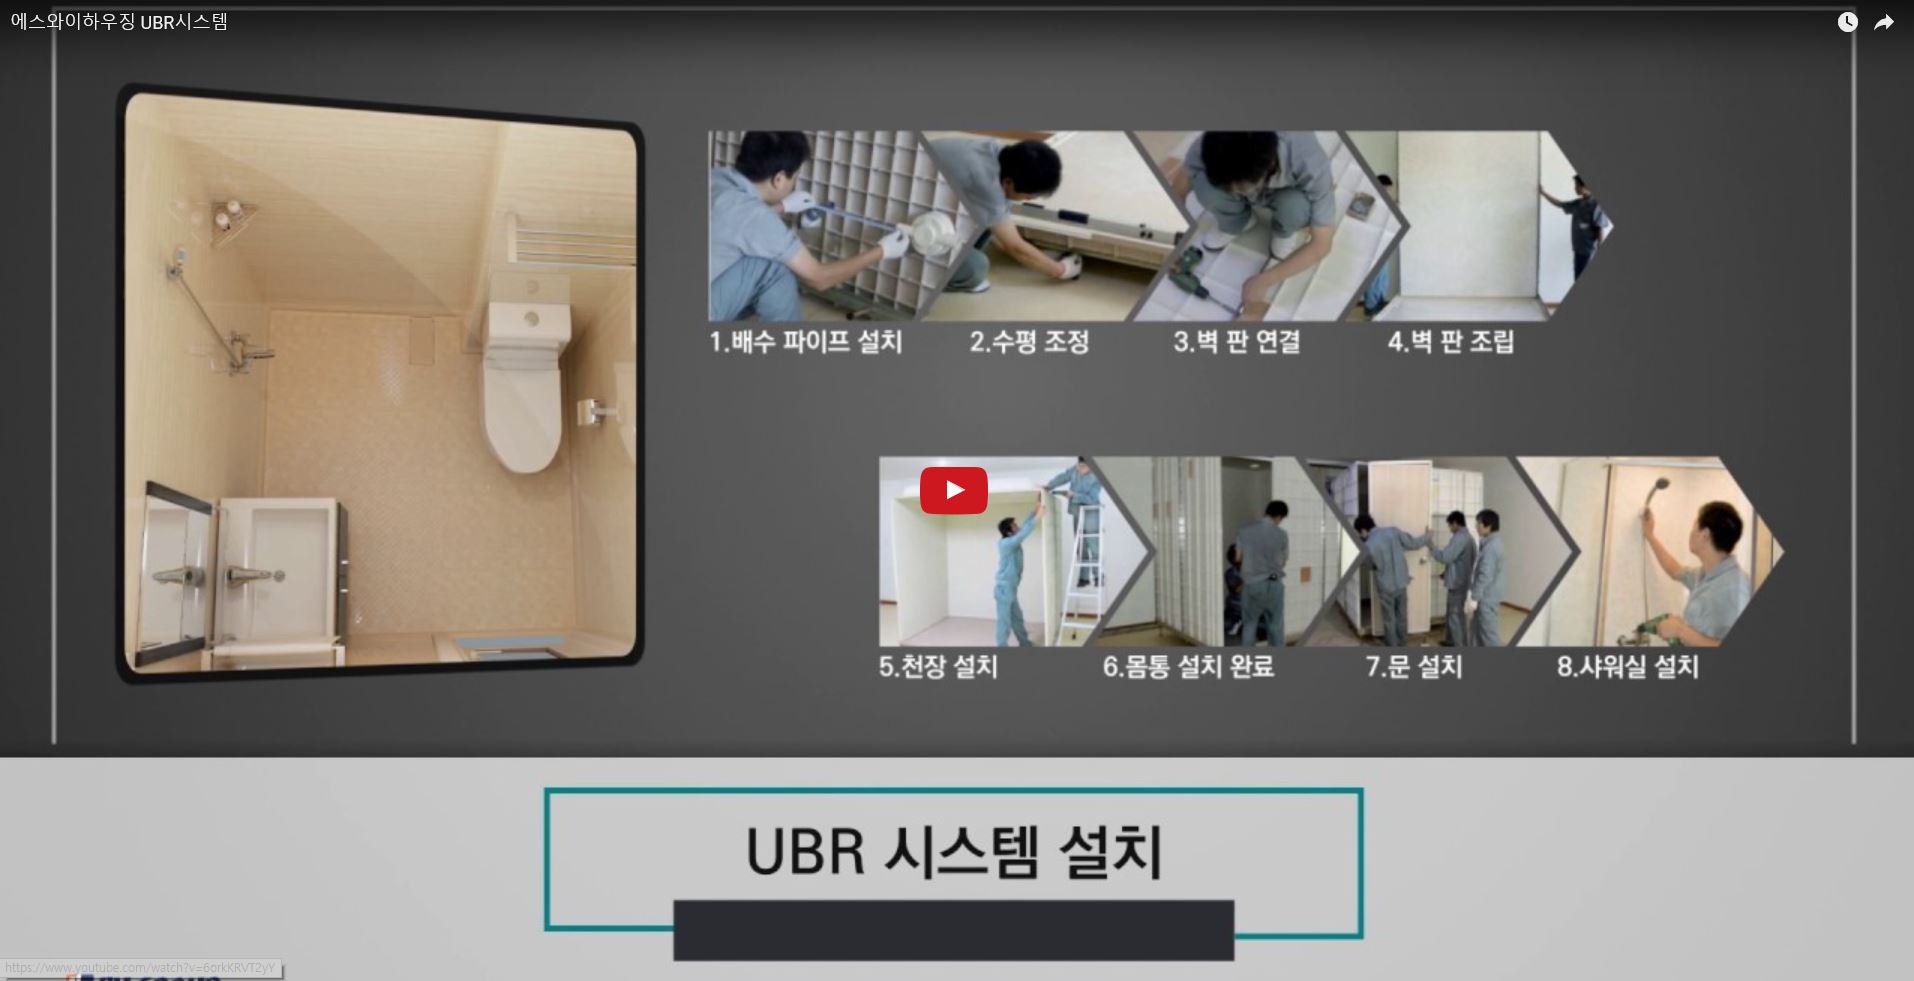 2017 에스와이그룹 UBR 소개영상(국문)